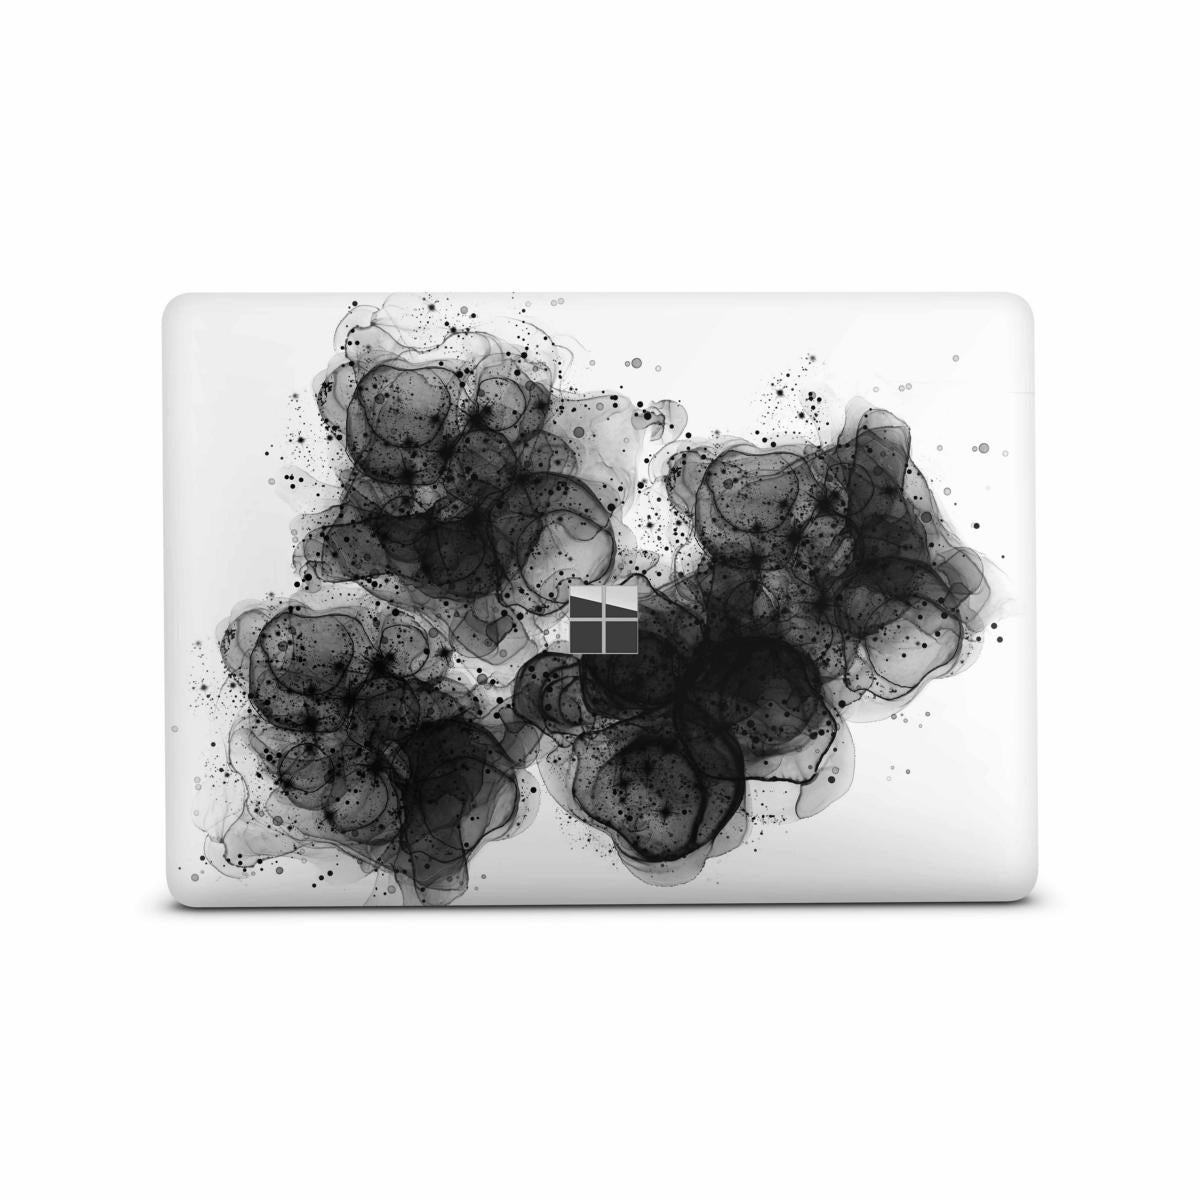 Microsoft Surface Book 2 Skin 15" Premium Vinylfolie Kratzerschutz Design Black & White Elektronik-Sticker & -Aufkleber Skins4u   